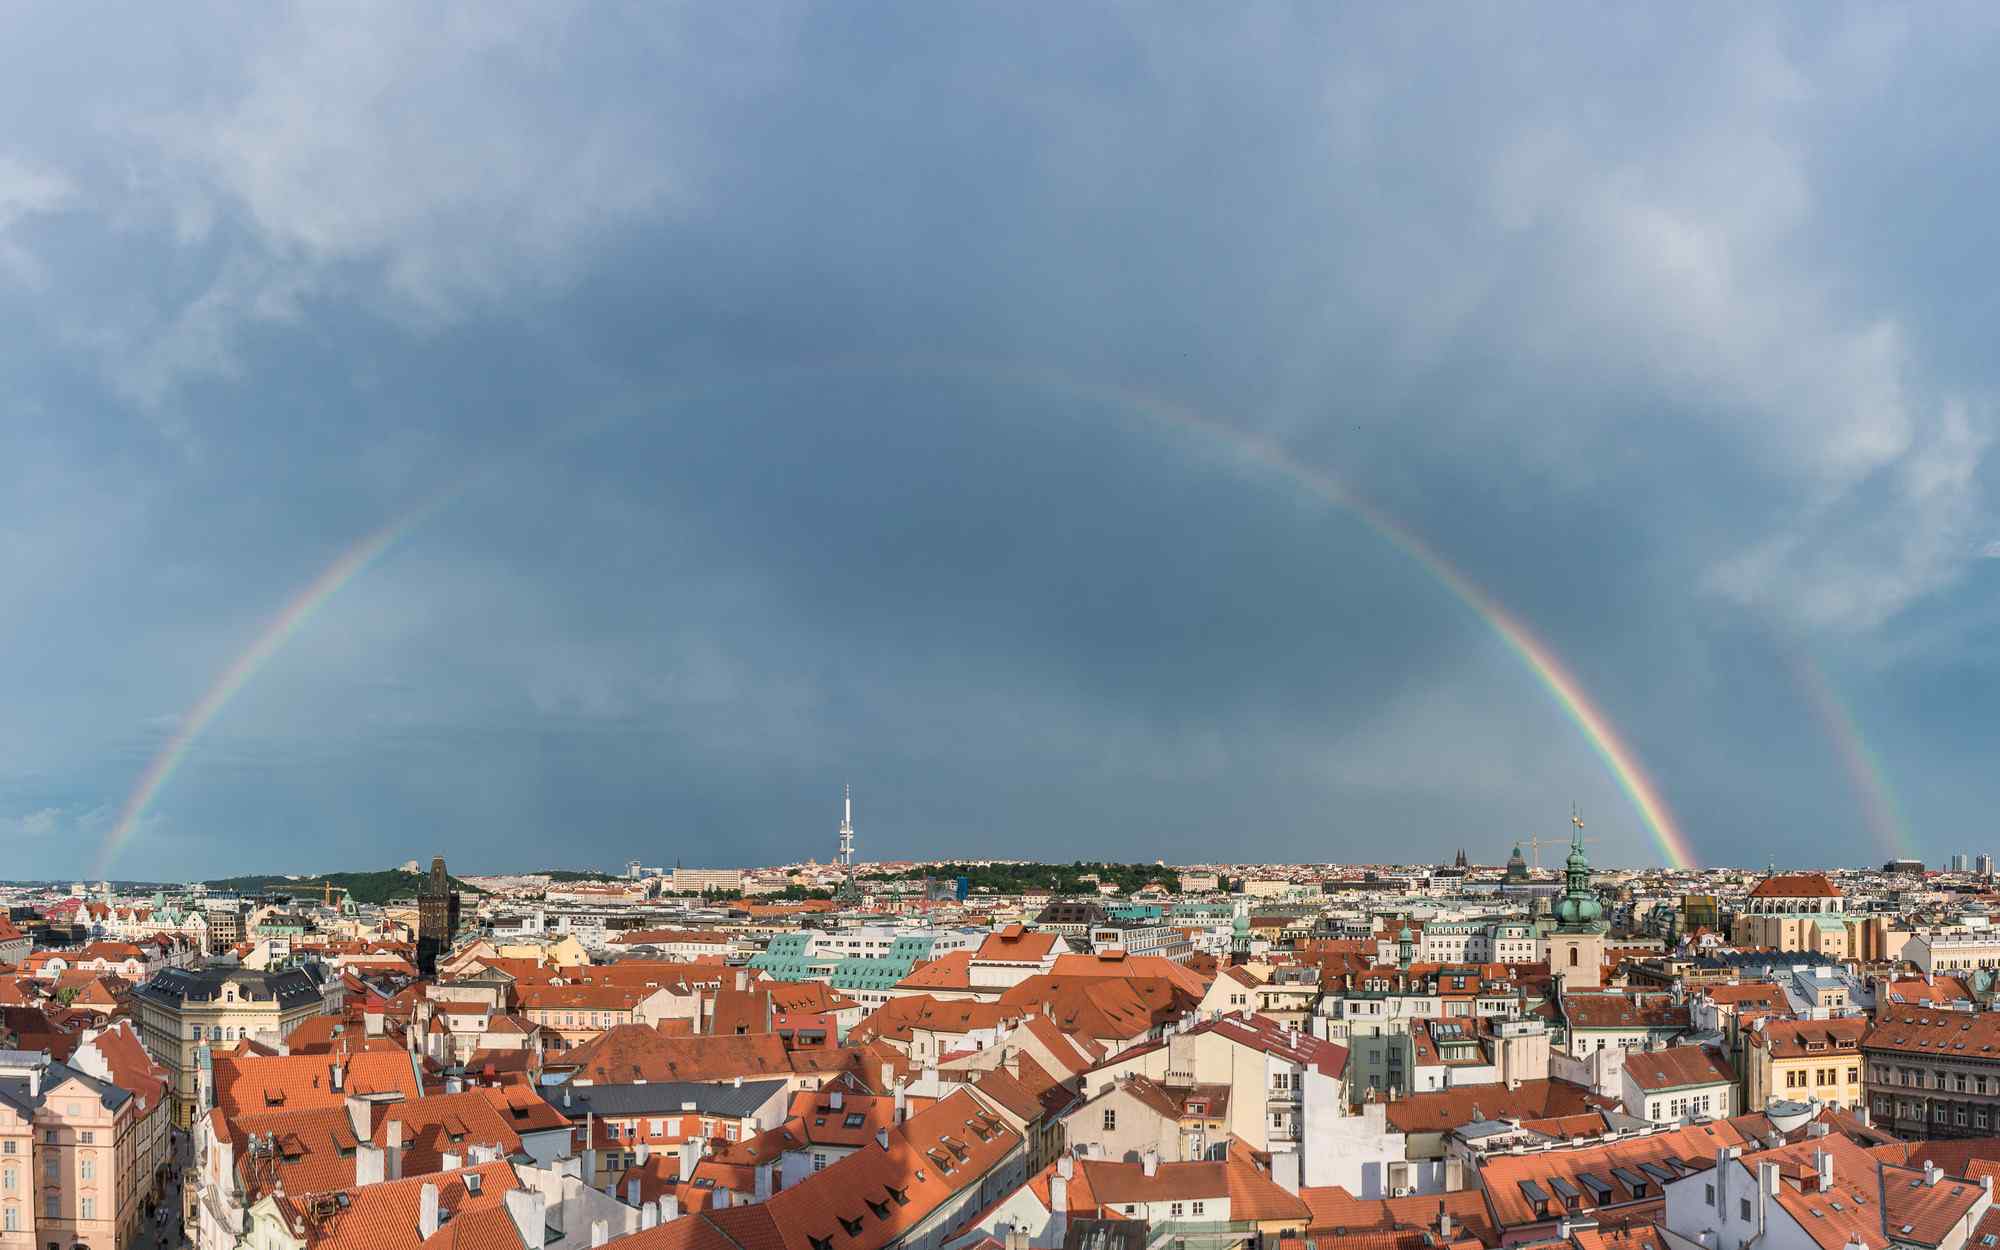 布拉格雨后美丽彩虹风景图片高清桌面壁纸